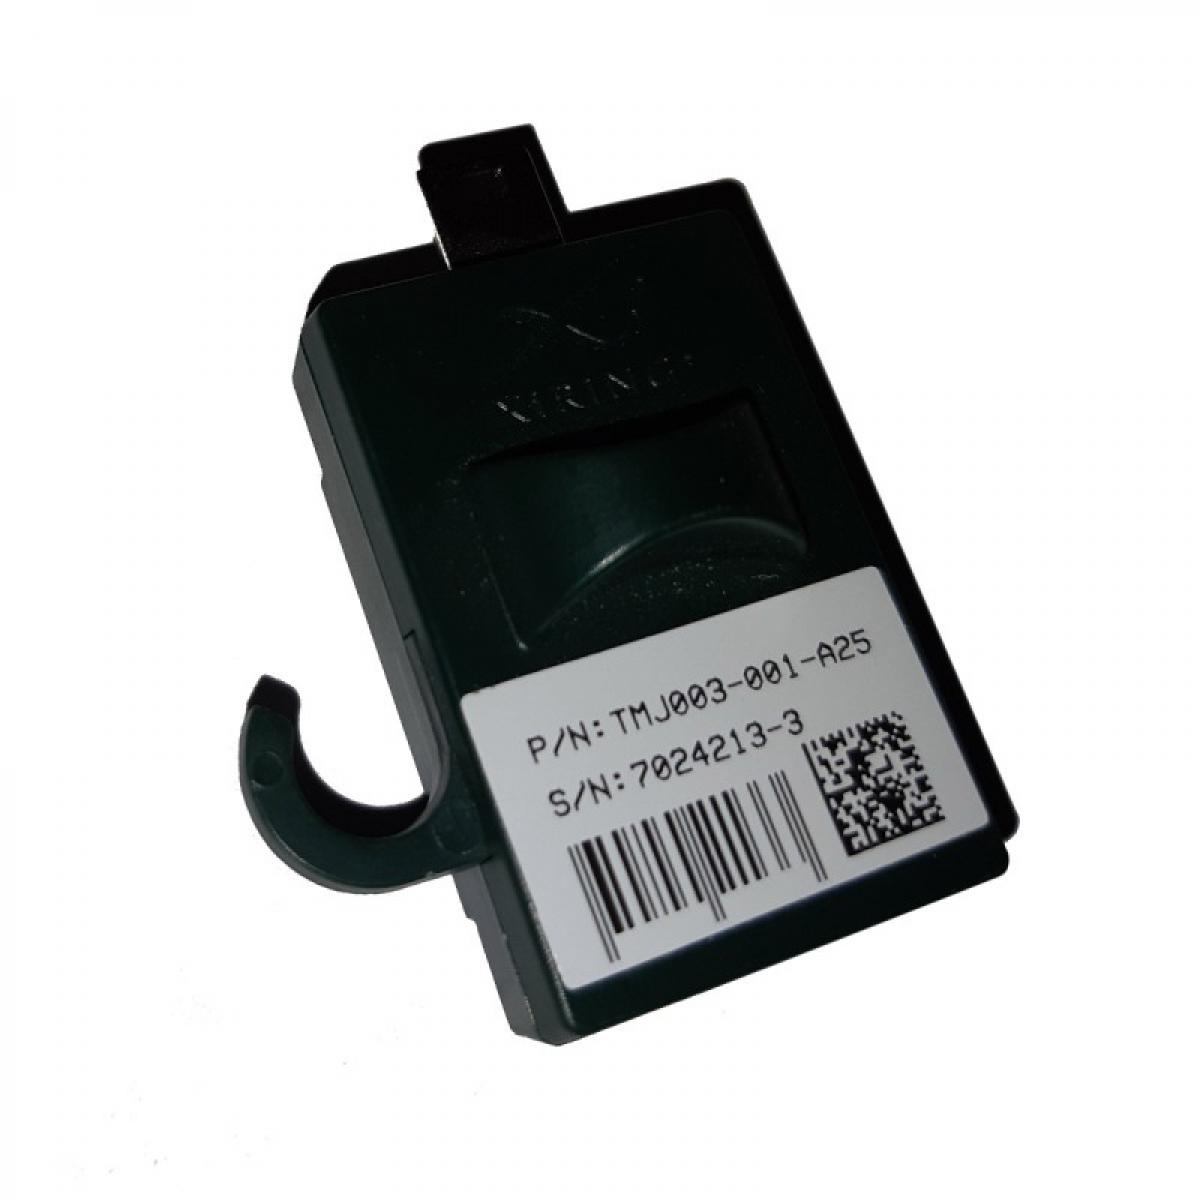 Xiring - Adaptateur Mini-USB XIRING TMJ003-001-A25 11014354 - Hub